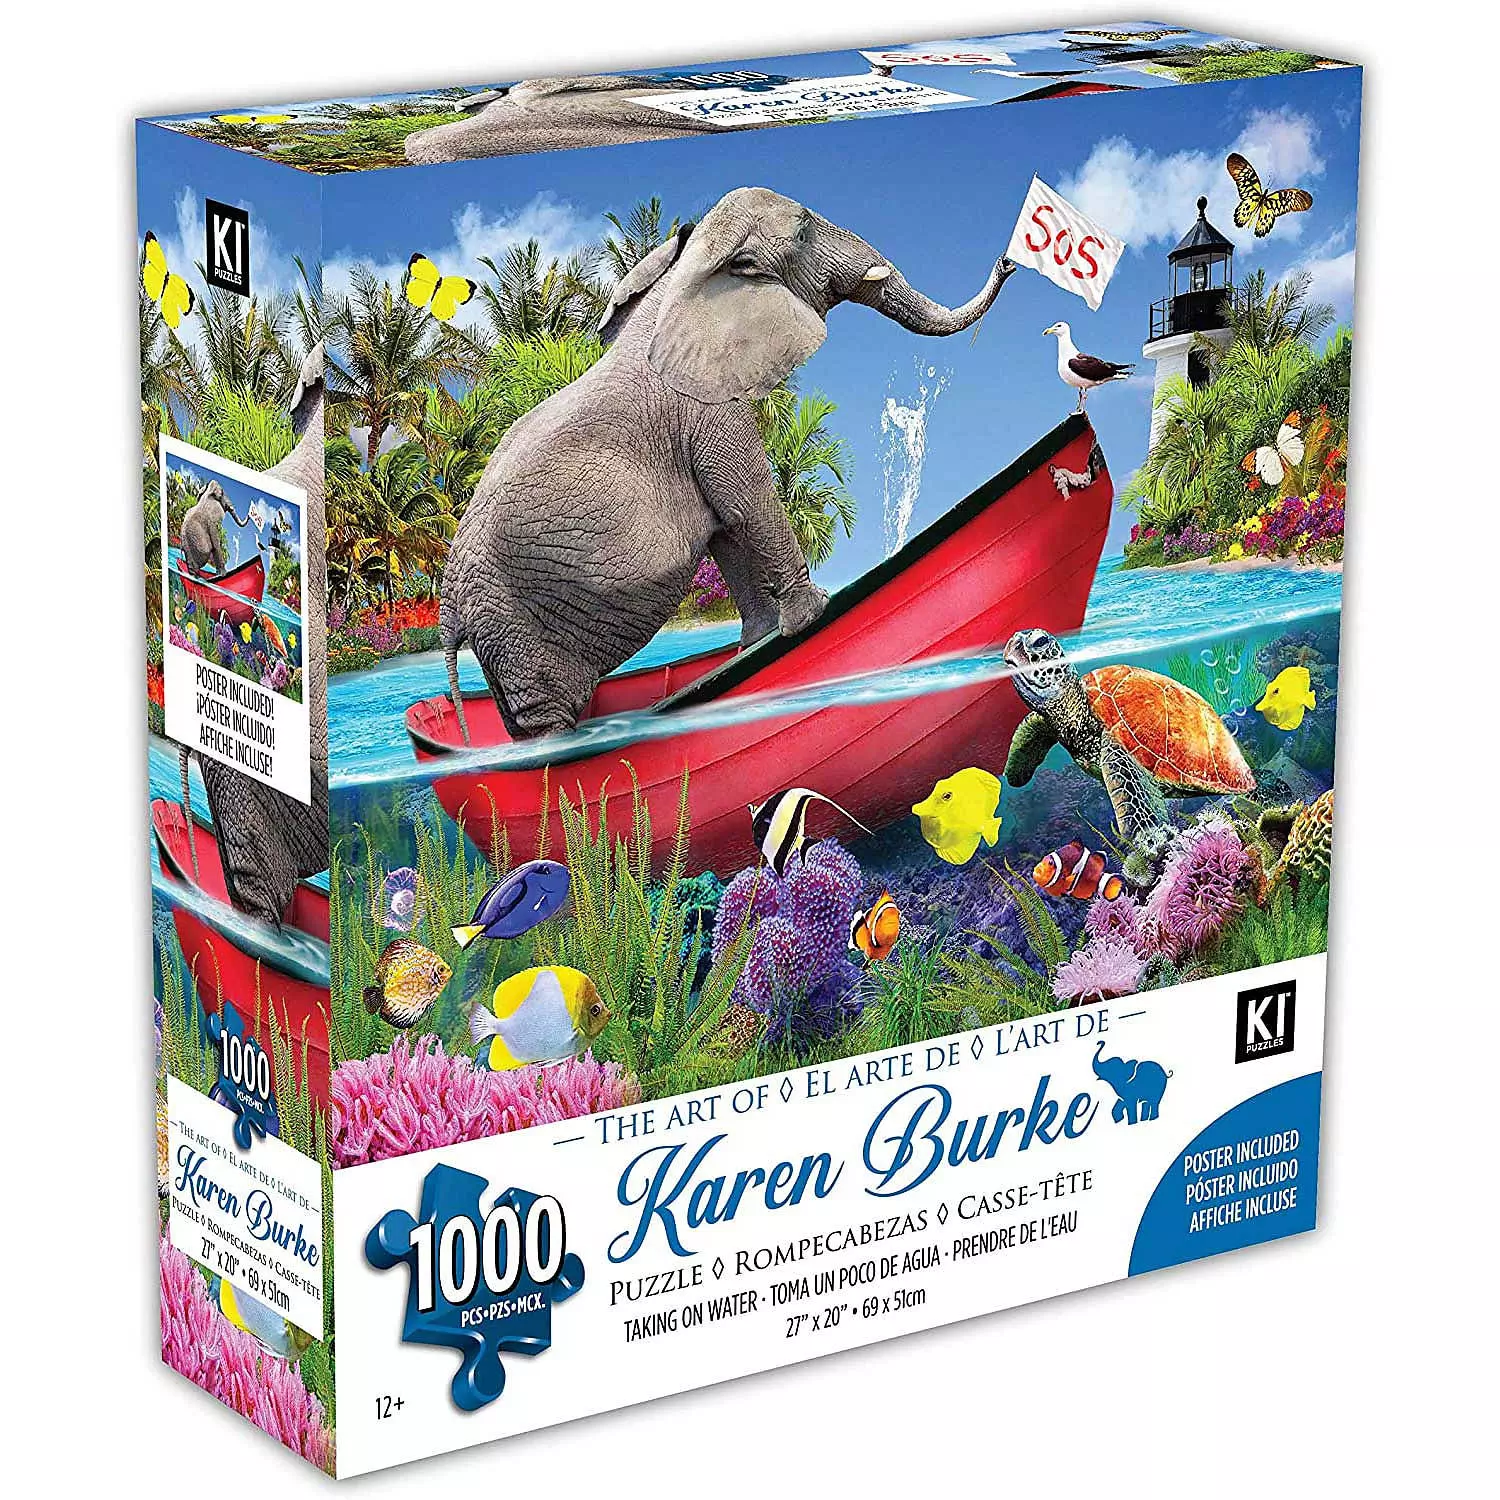 KI - Puzzle, Karen Burke, Taking on water, 1000 pcs